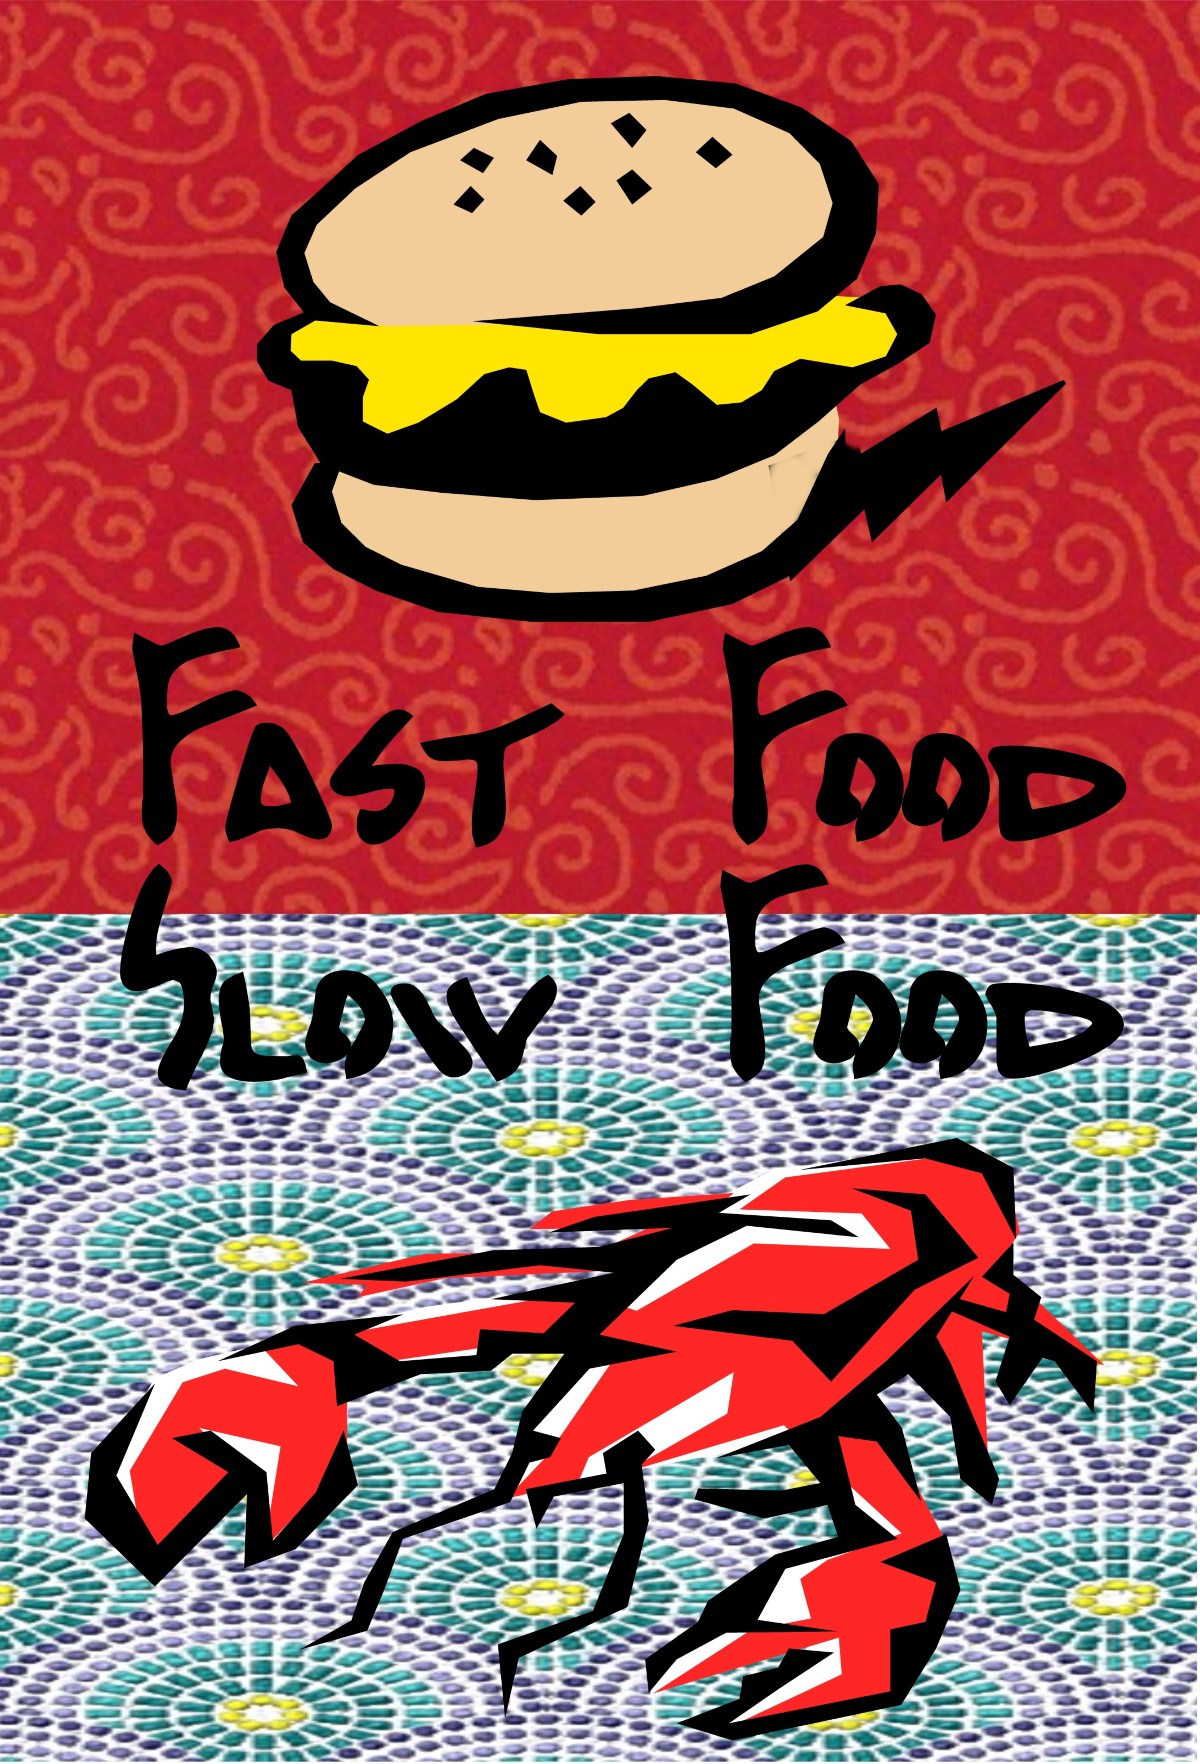 Fast Food Slow Food